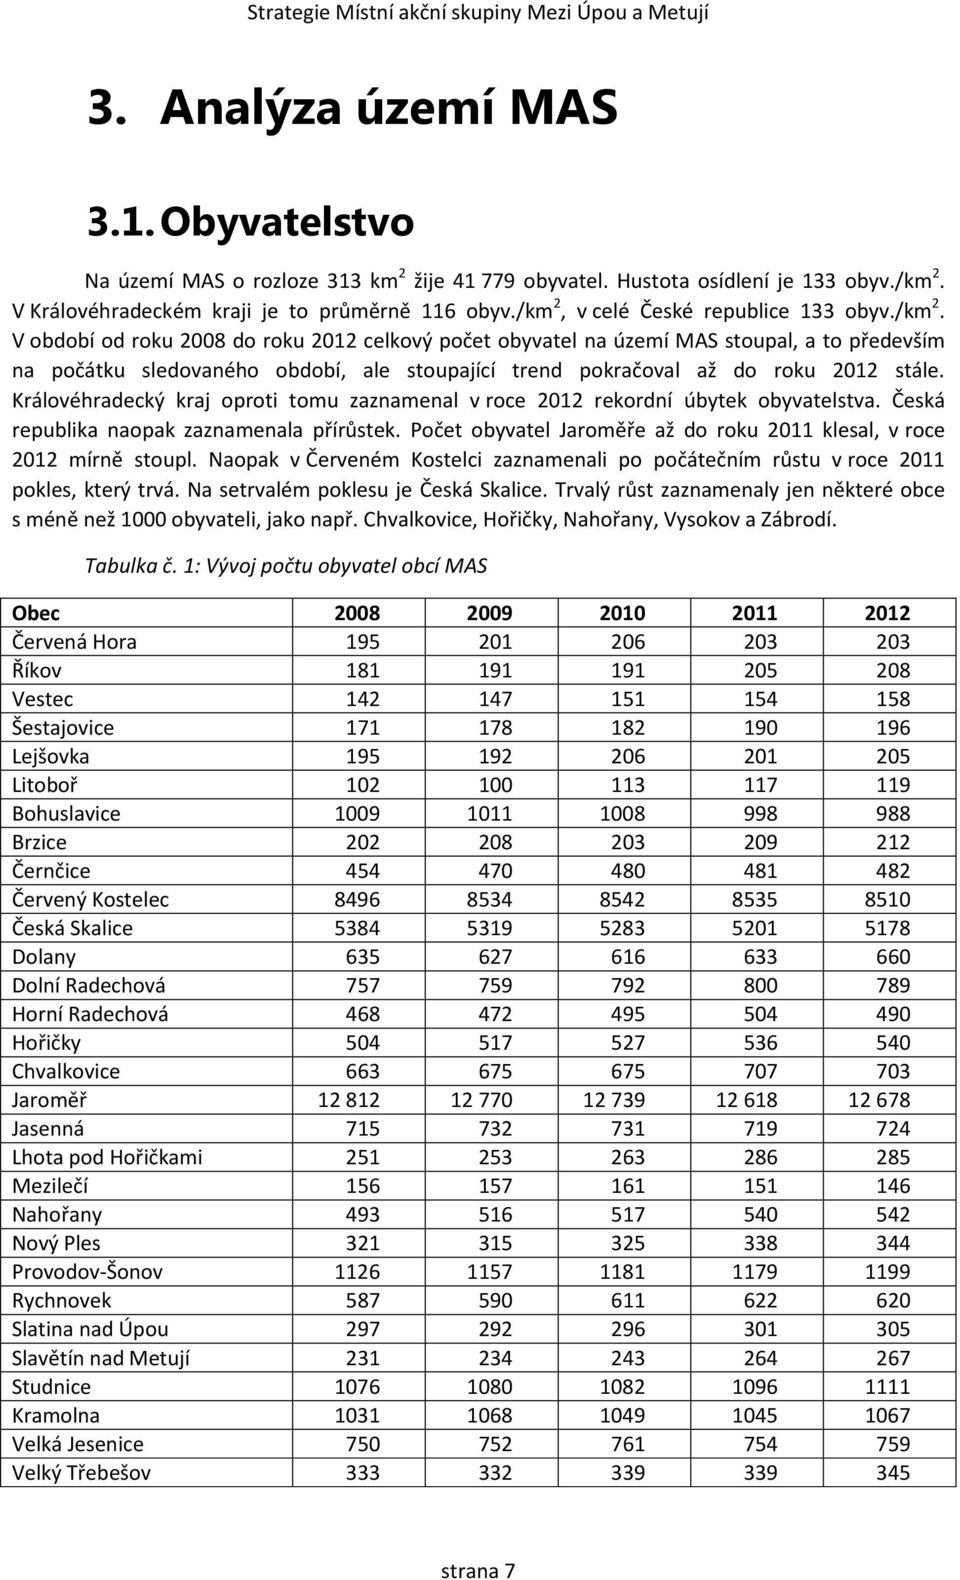 Královéhradecký kraj oproti tomu zaznamenal v roce 2012 rekordní úbytek obyvatelstva. Česká republika naopak zaznamenala přírůstek.